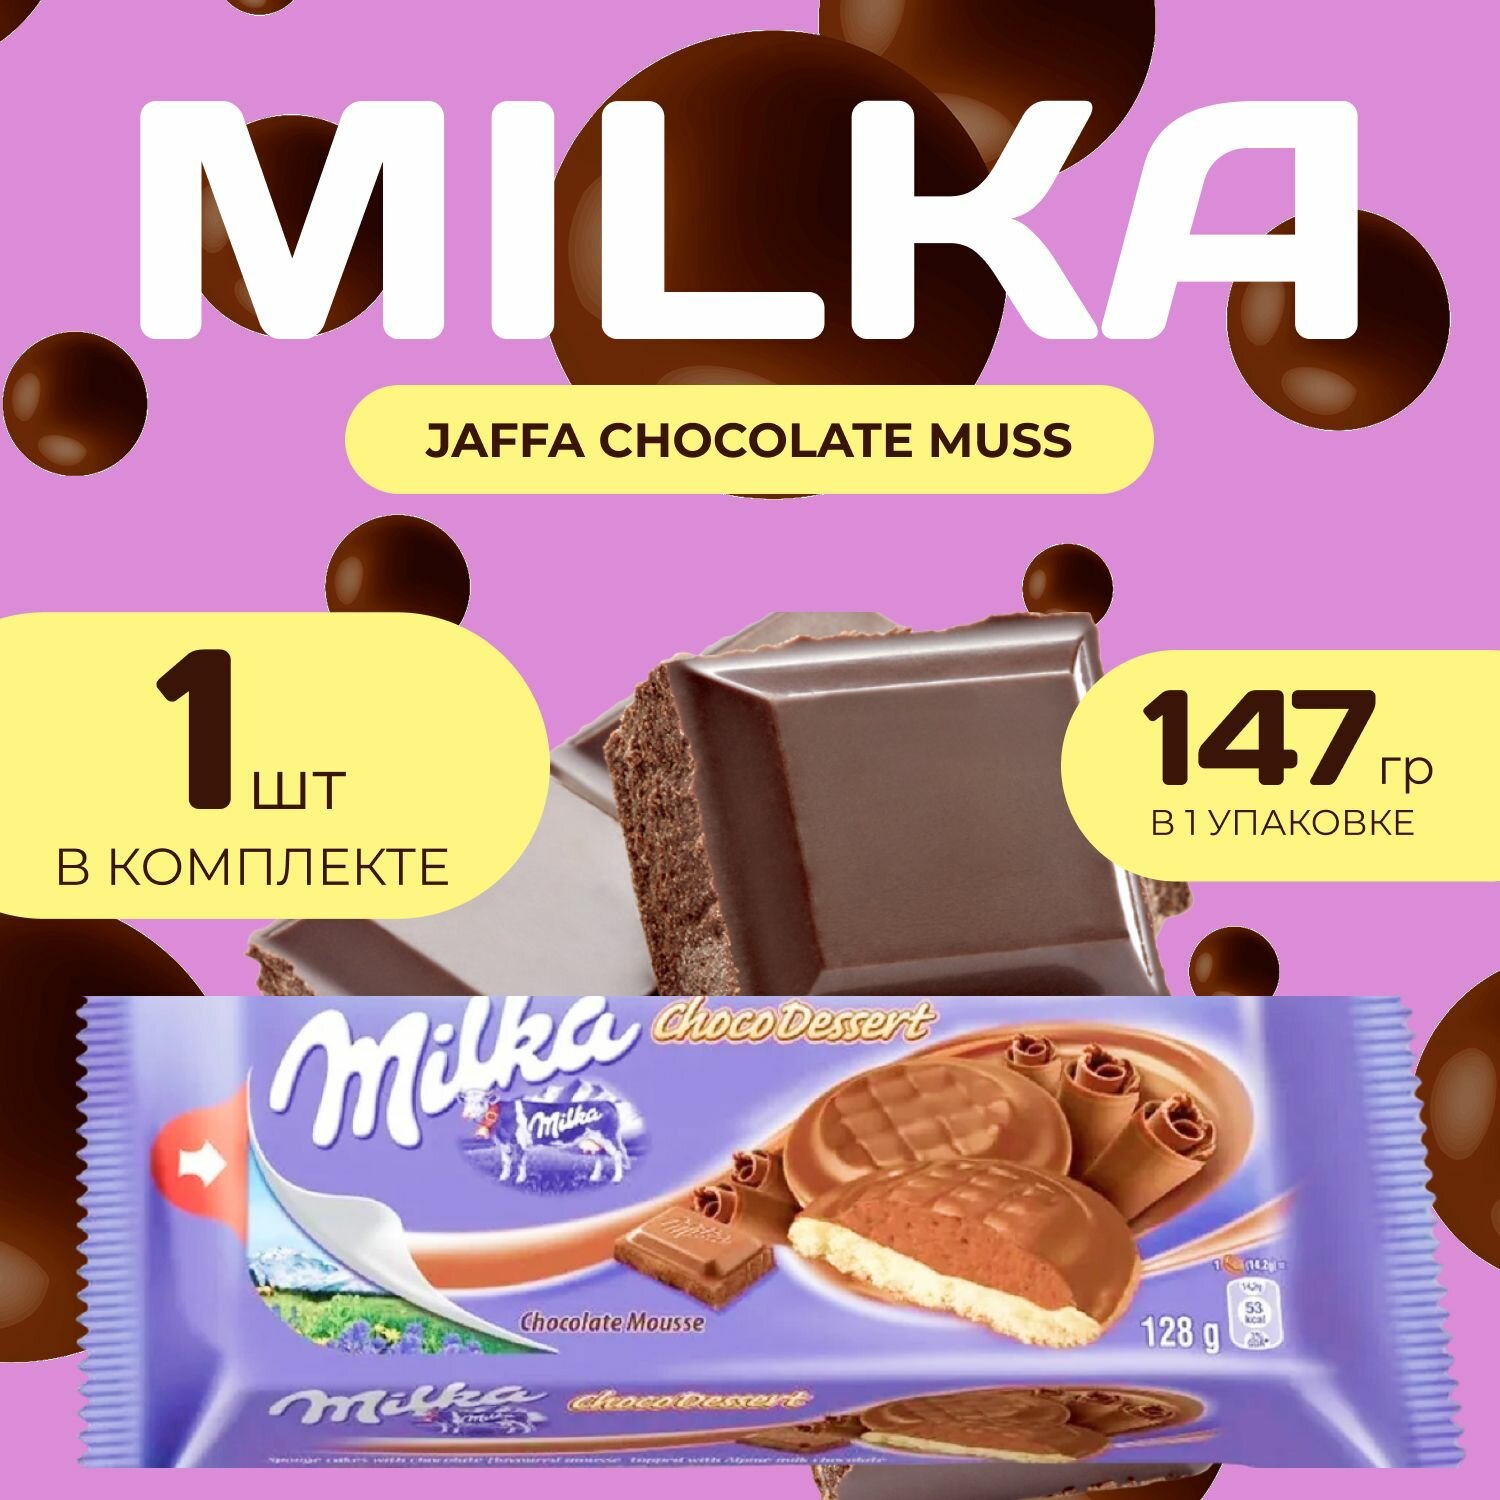 Milka Печенье Джафа с Шоколадной начинкой 147 гр.